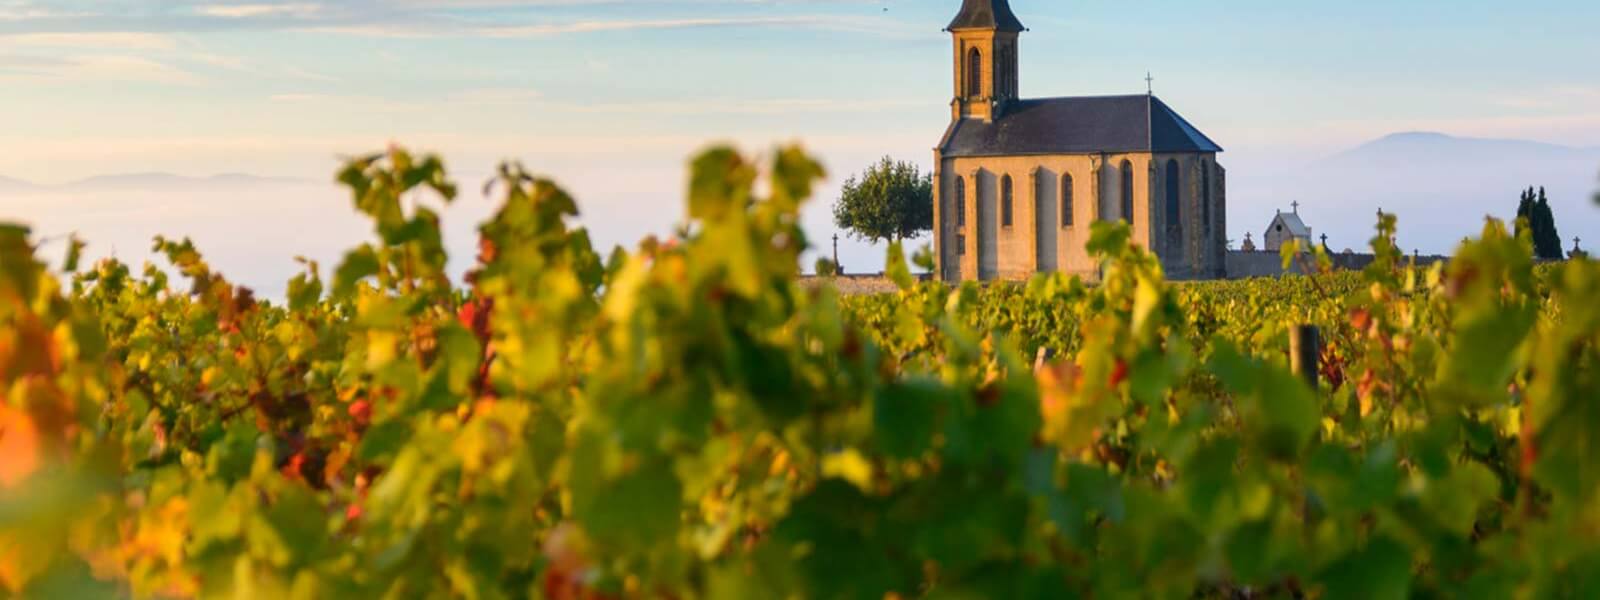 Kanpai Tourisme - Beaujolais Wine Country